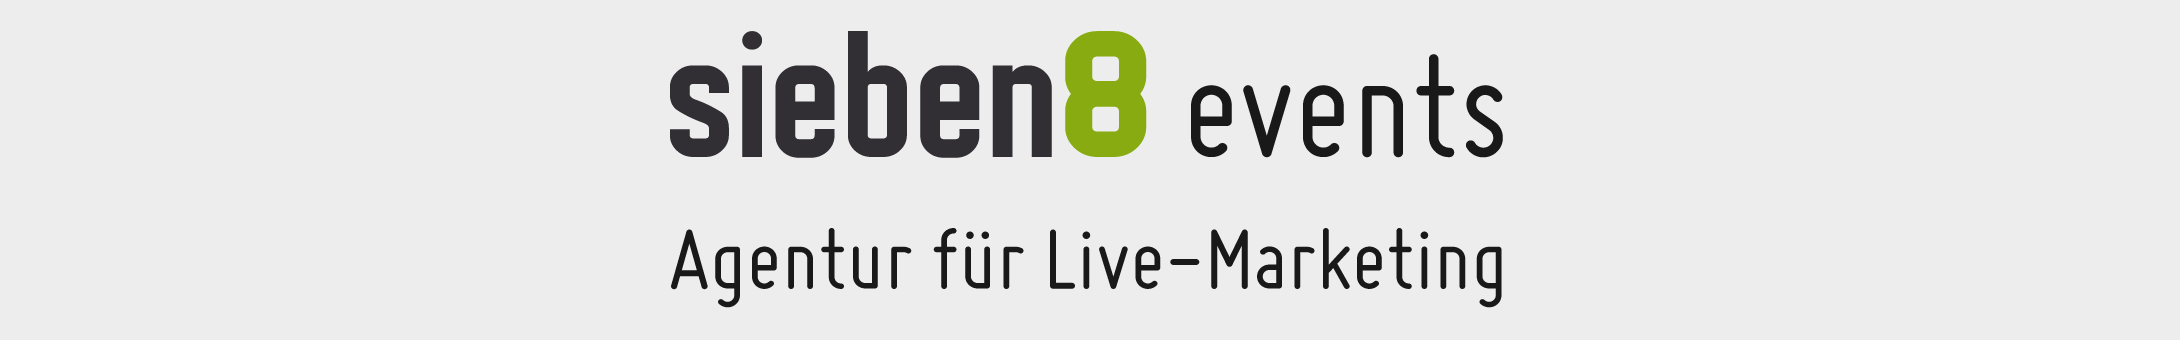 sieben8 events live